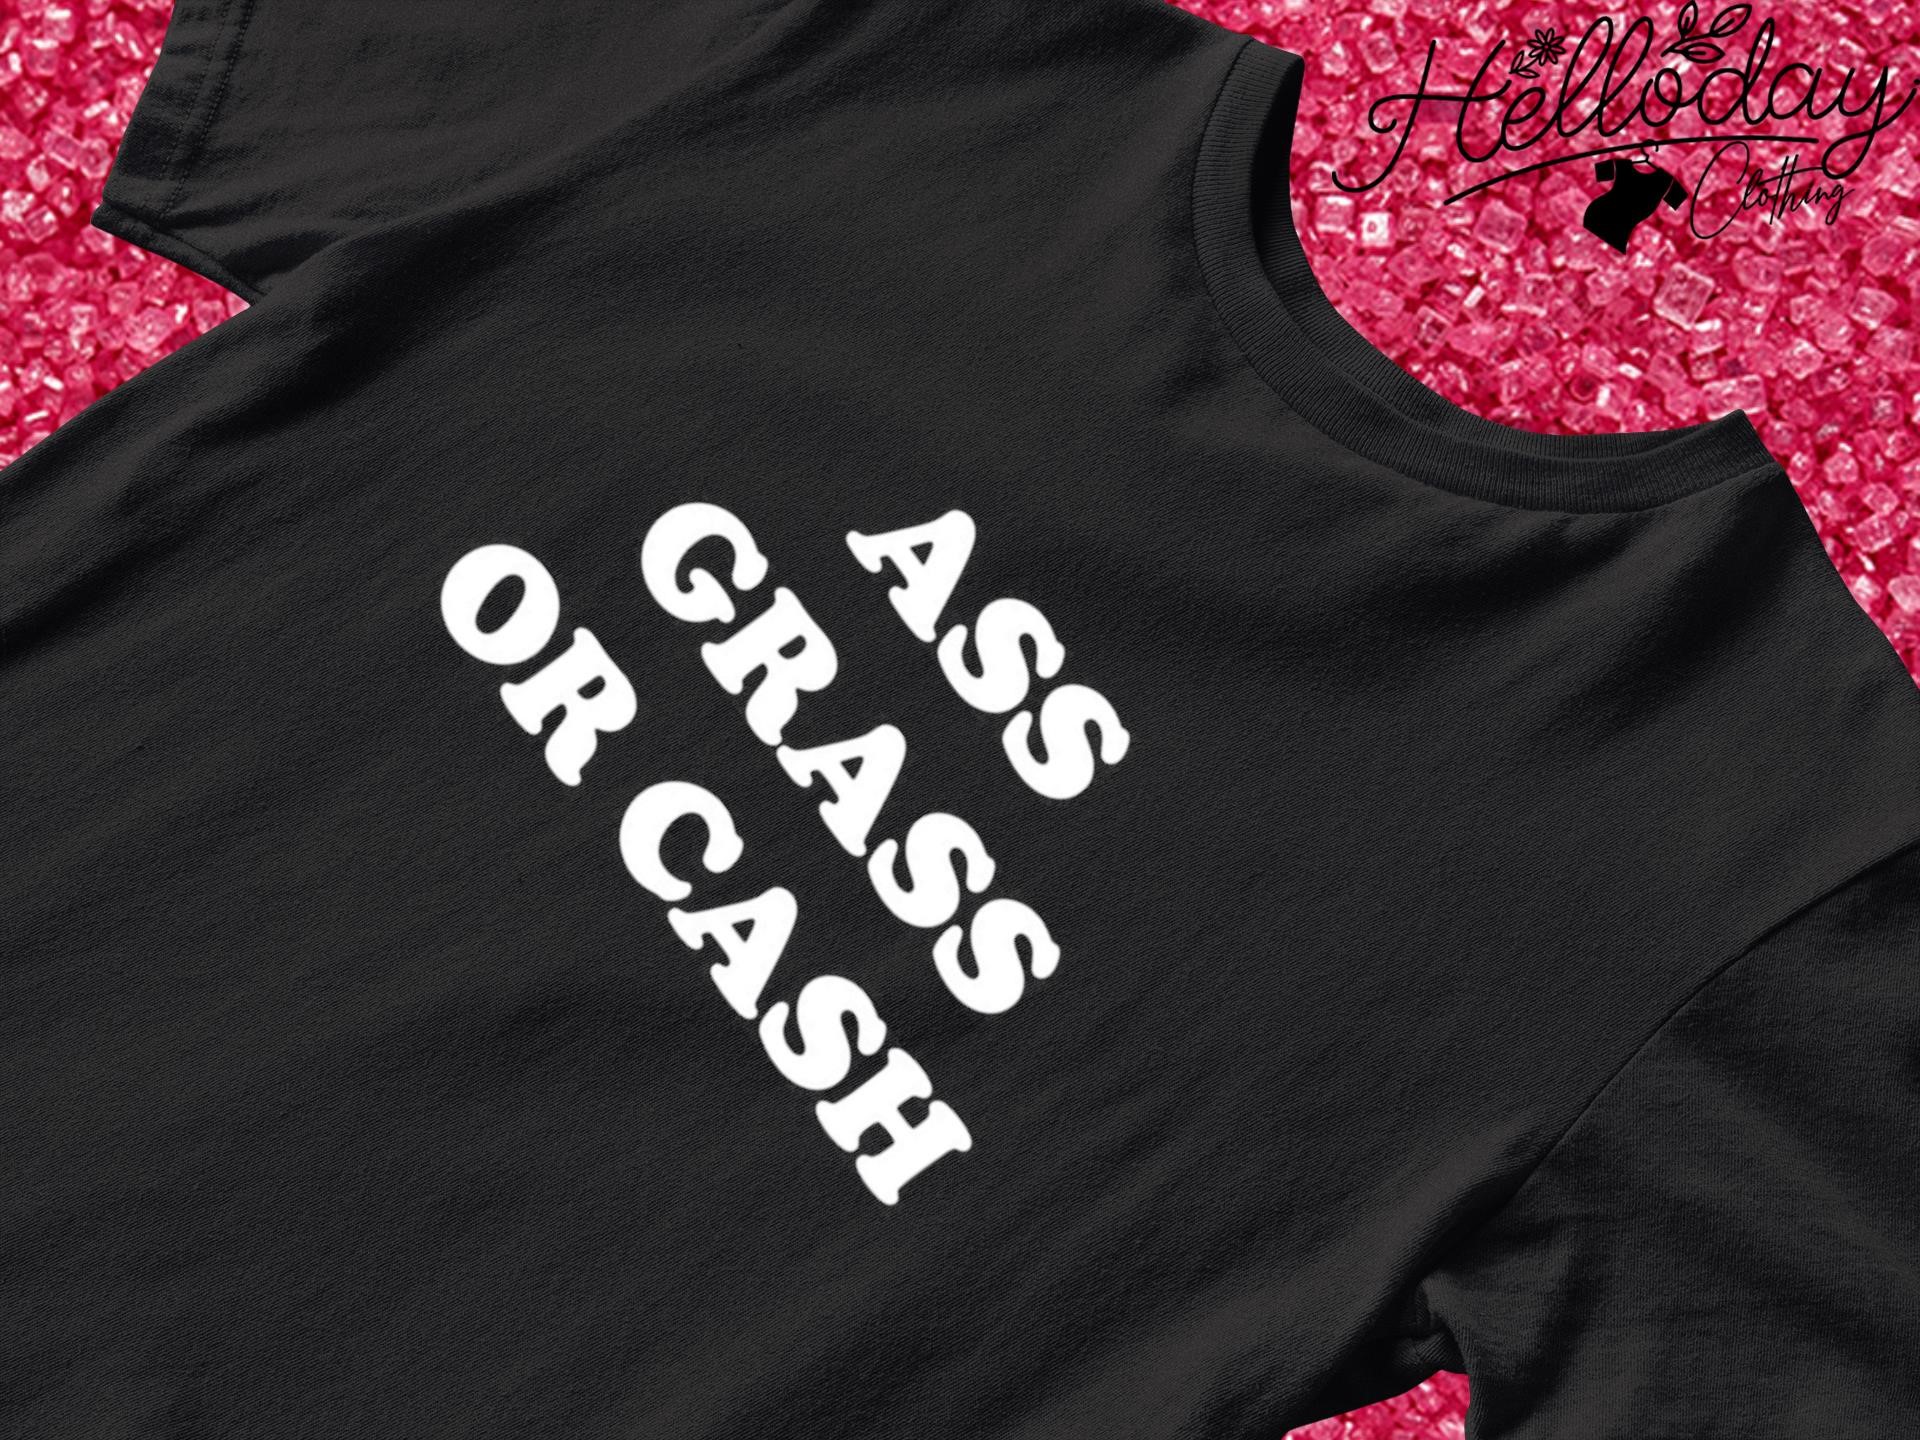 Ass grass or cash shirt